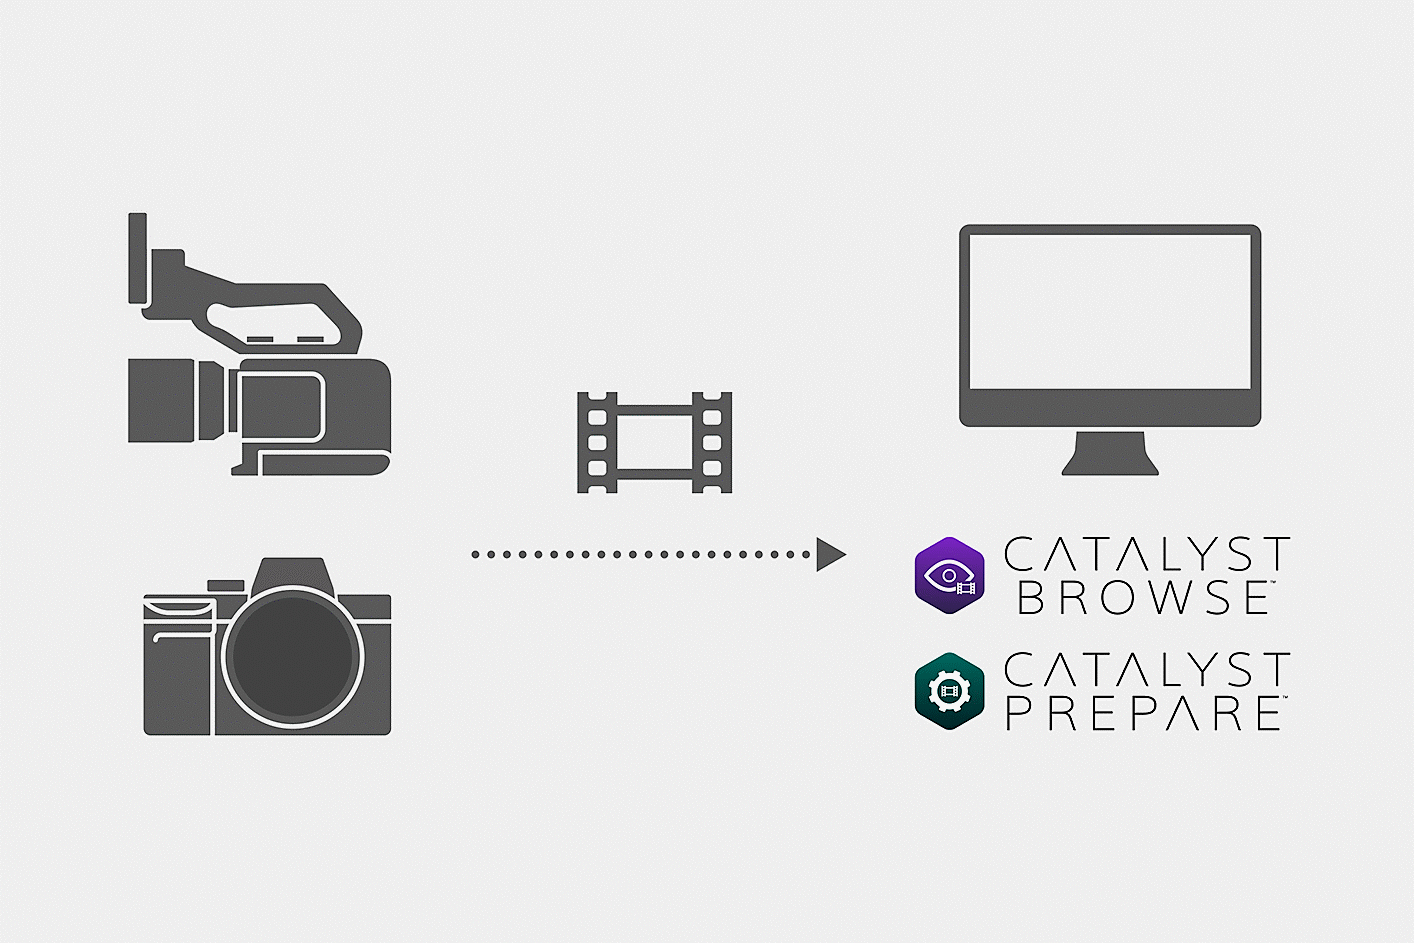 Εικόνα που δείχνει πώς τα αρχεία ταινιών που τραβήχτηκαν με τη μηχανή φορτώνονται στο Catalyst Browser ή στο Catalyst Prepare